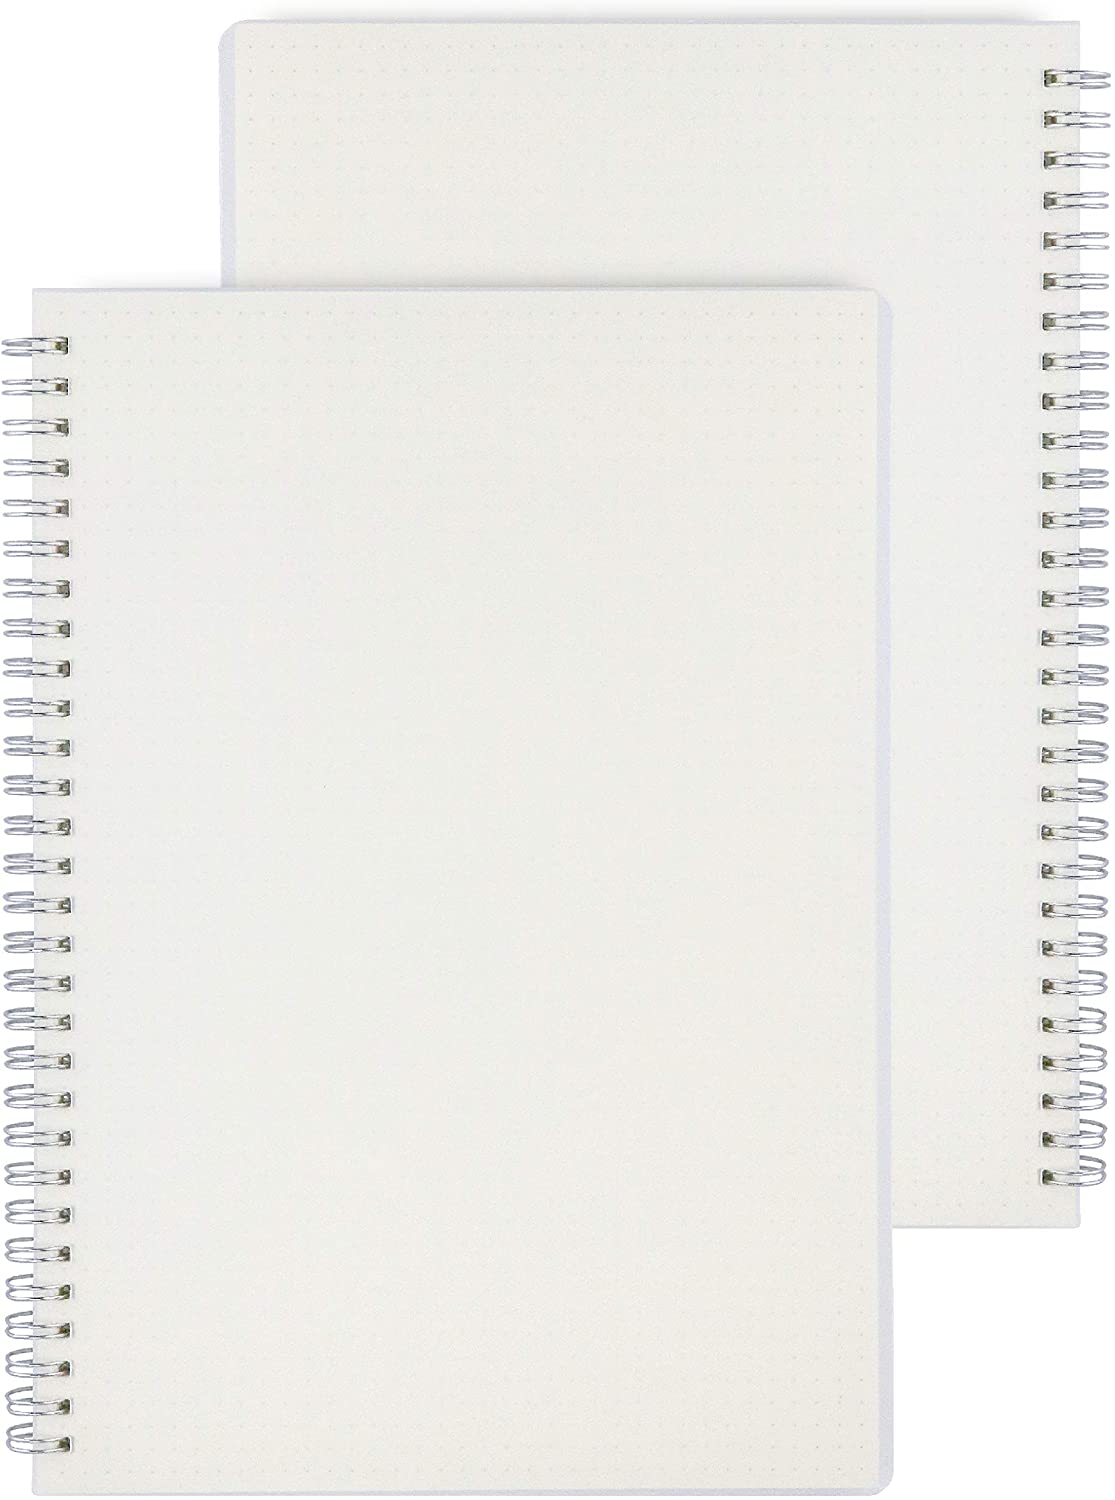 Notebooks Transparent - KibrisPDR